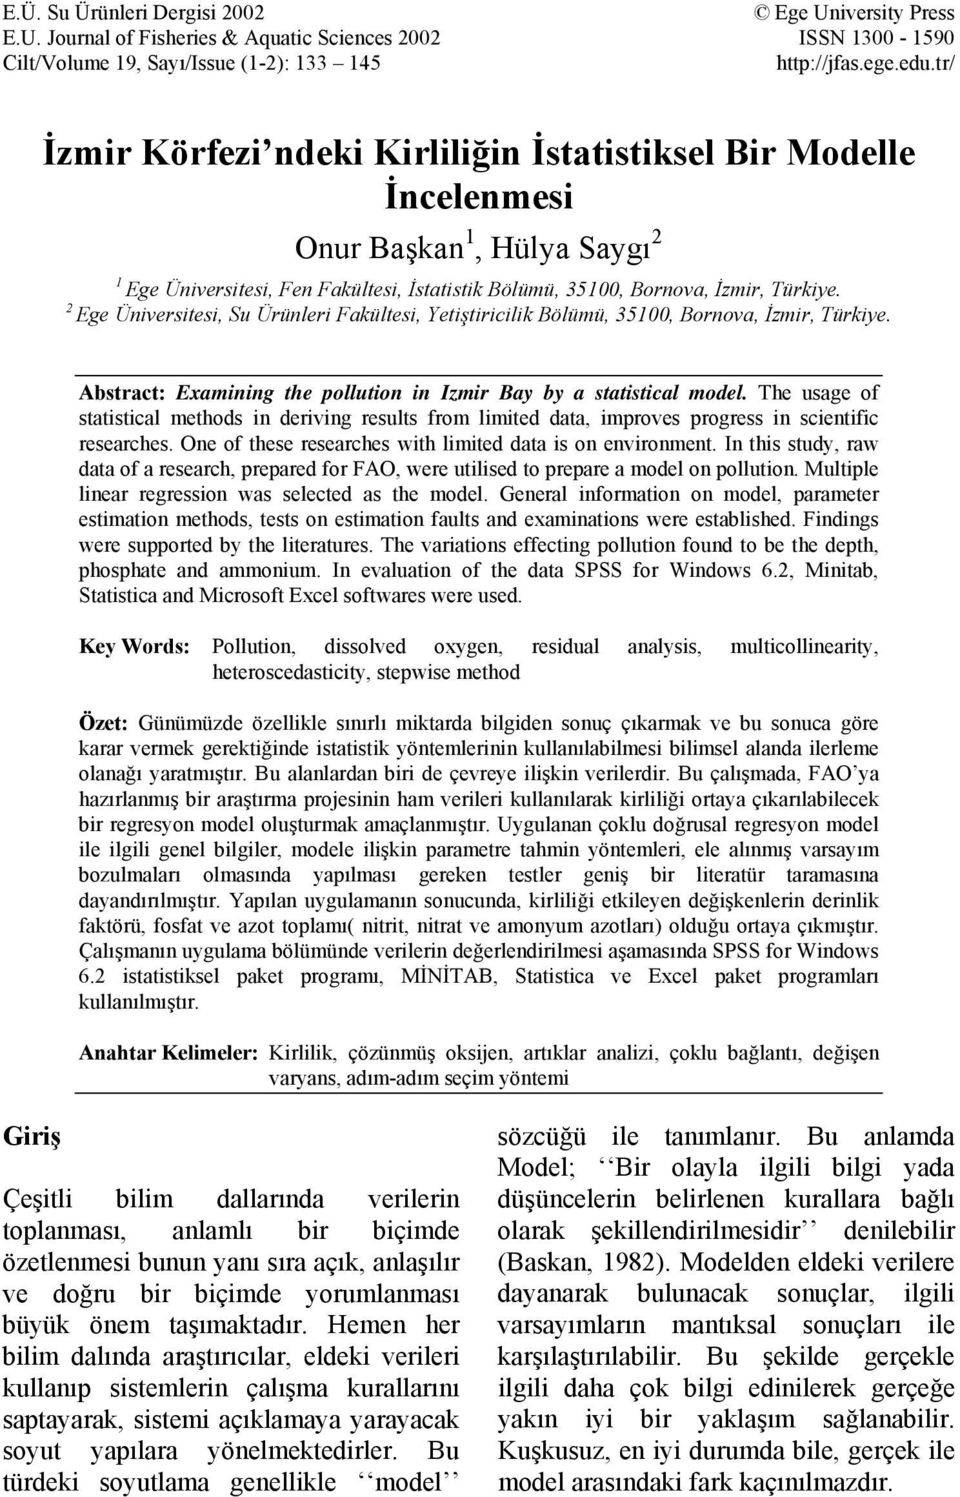 2 Ege Üniversitesi, Su Ürünle Fakültesi, Yetişticilik Bölümü, 35100, Bornova, İzmir, Türkiye. Abstract: Examining the pollution in Izmir Bay by a statistical model.